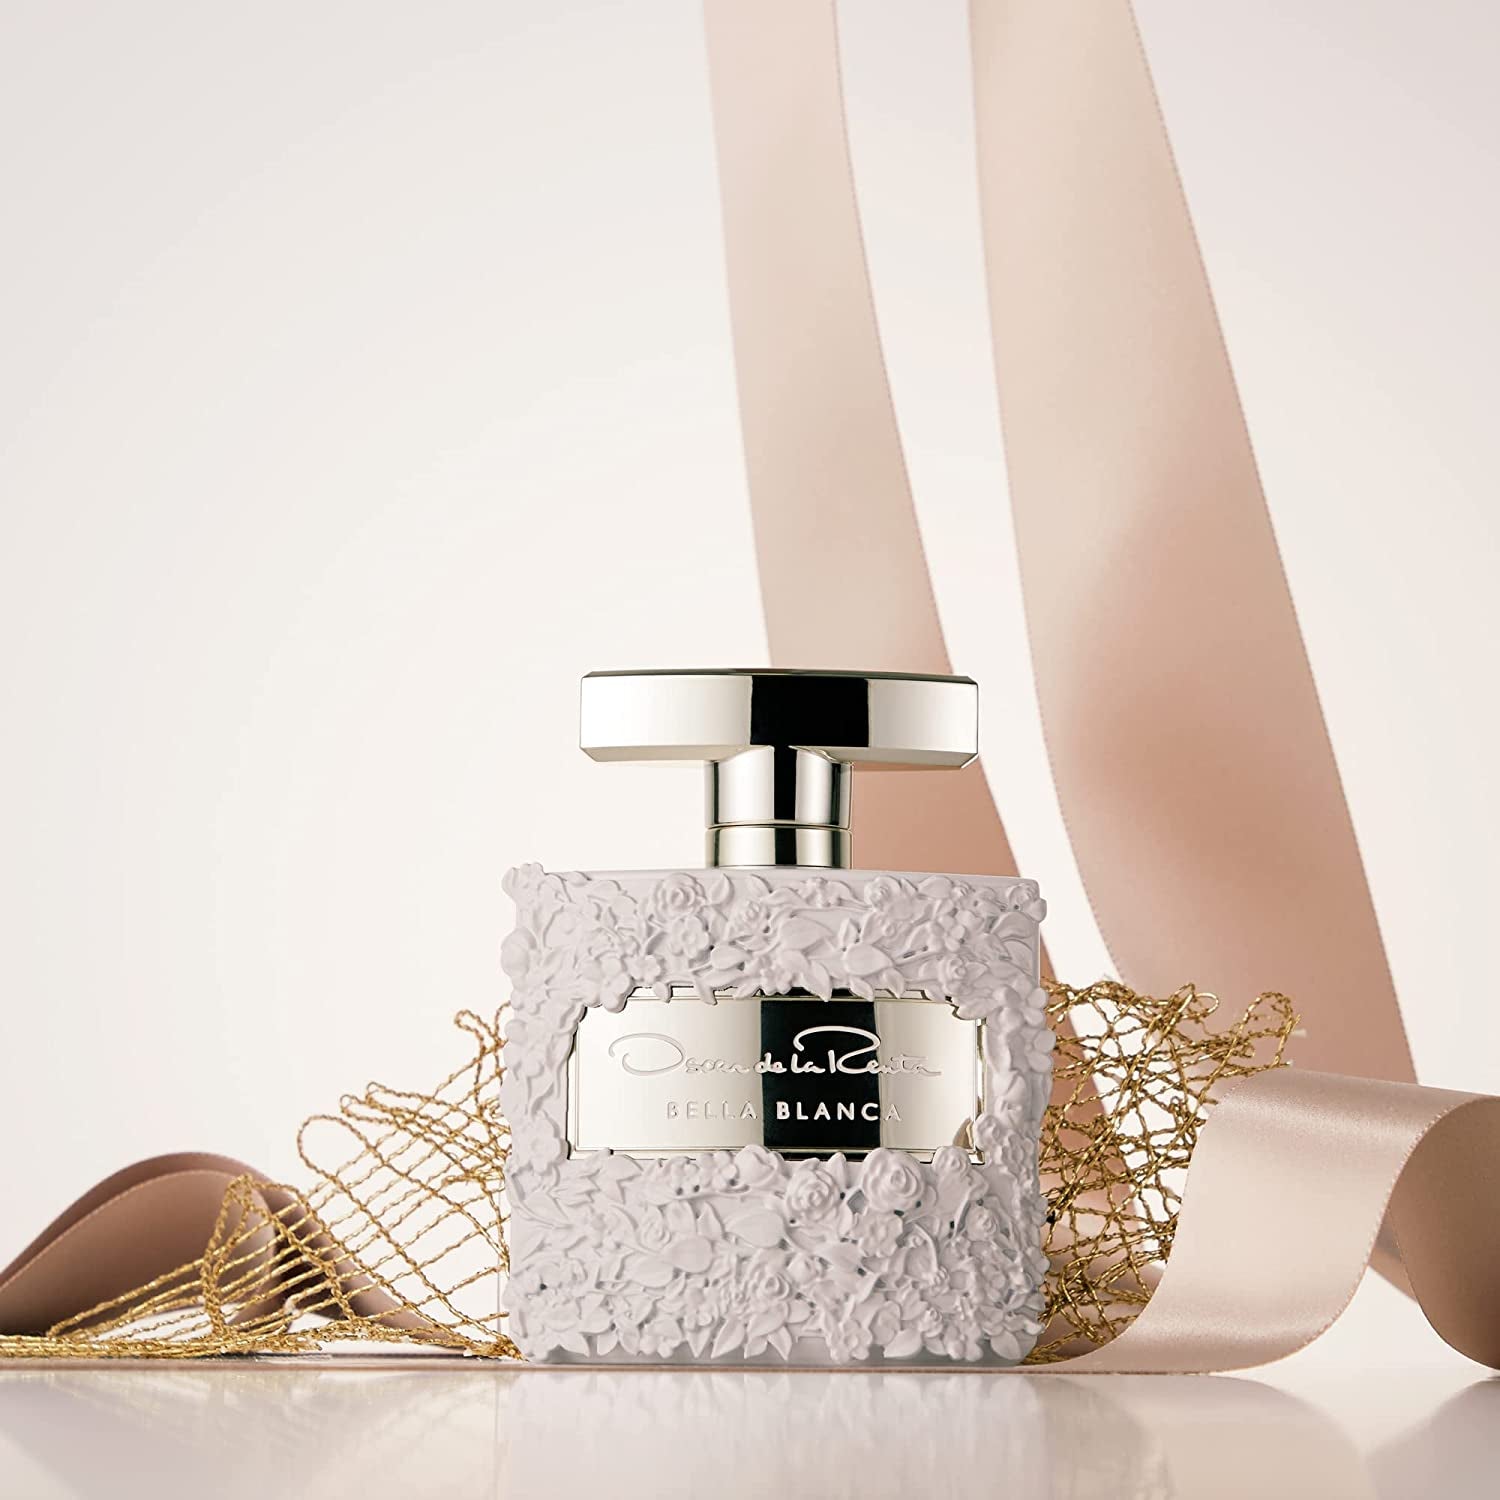 Oscar De La Renta Bella Blanca Eau de Parfum Perfume Spray For Women